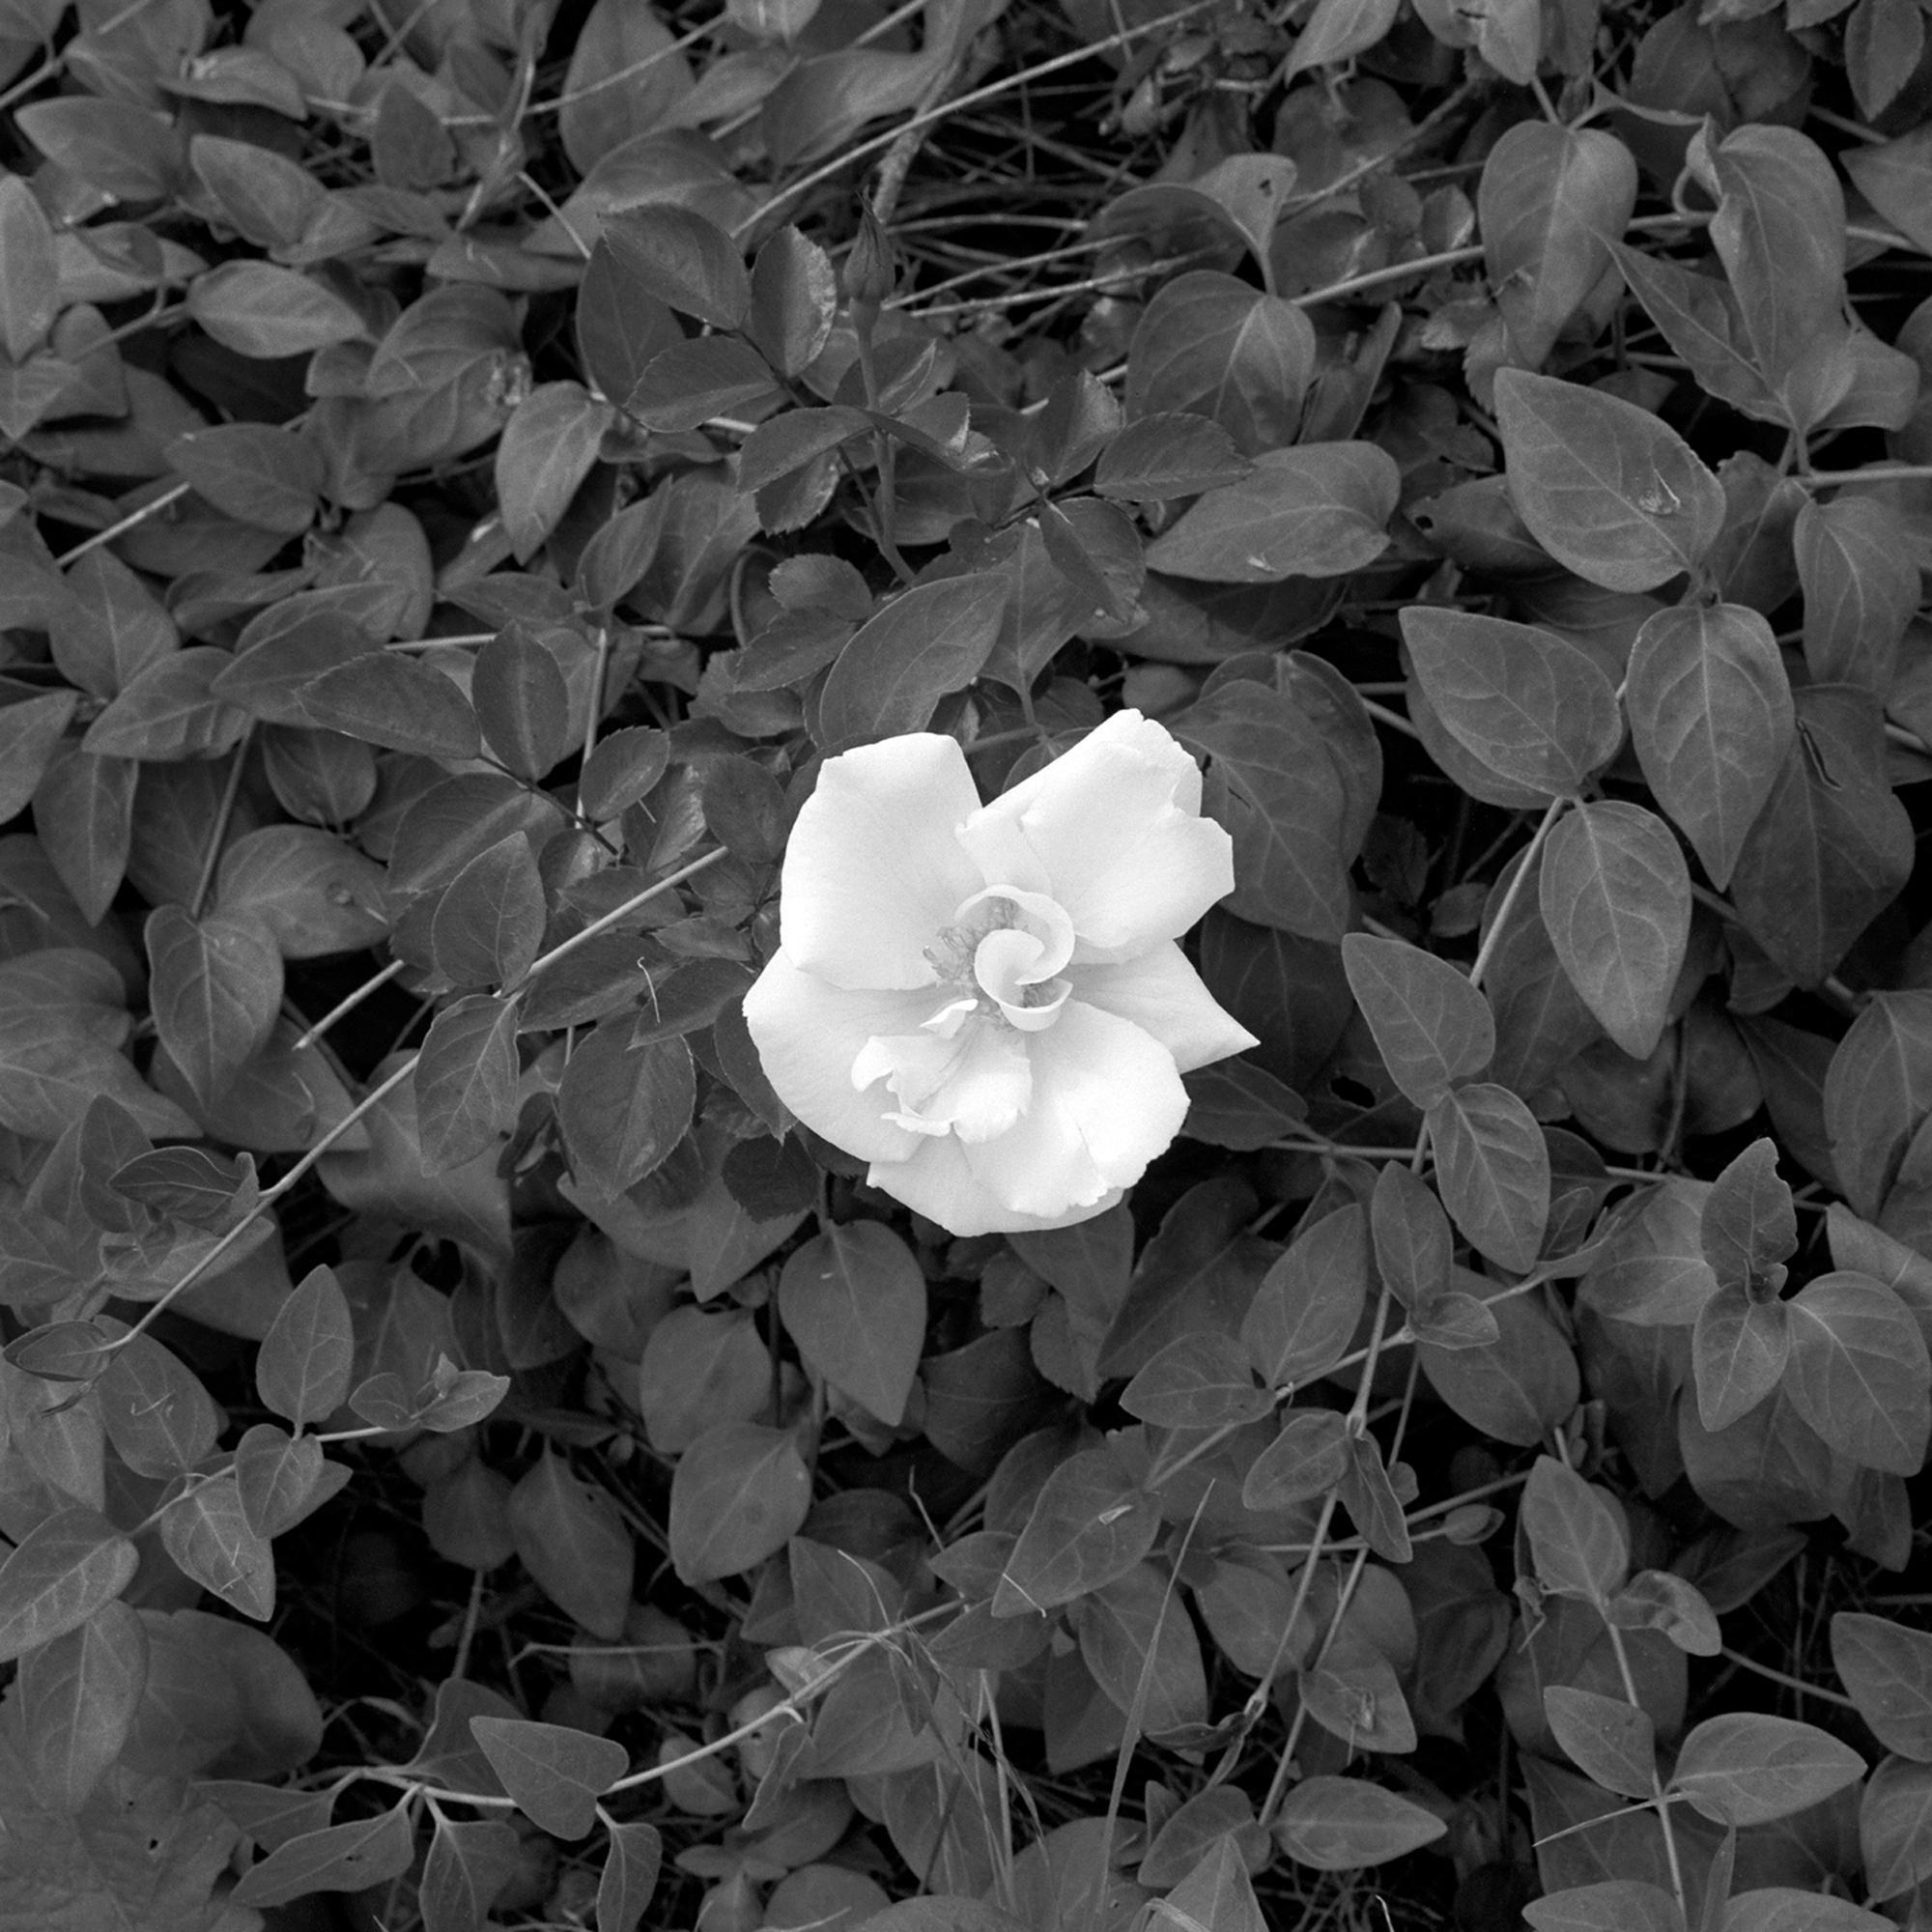 Jardinia : photographie encadrée en noir et blanc, fleur avec vignes et feuilles dans un paysage